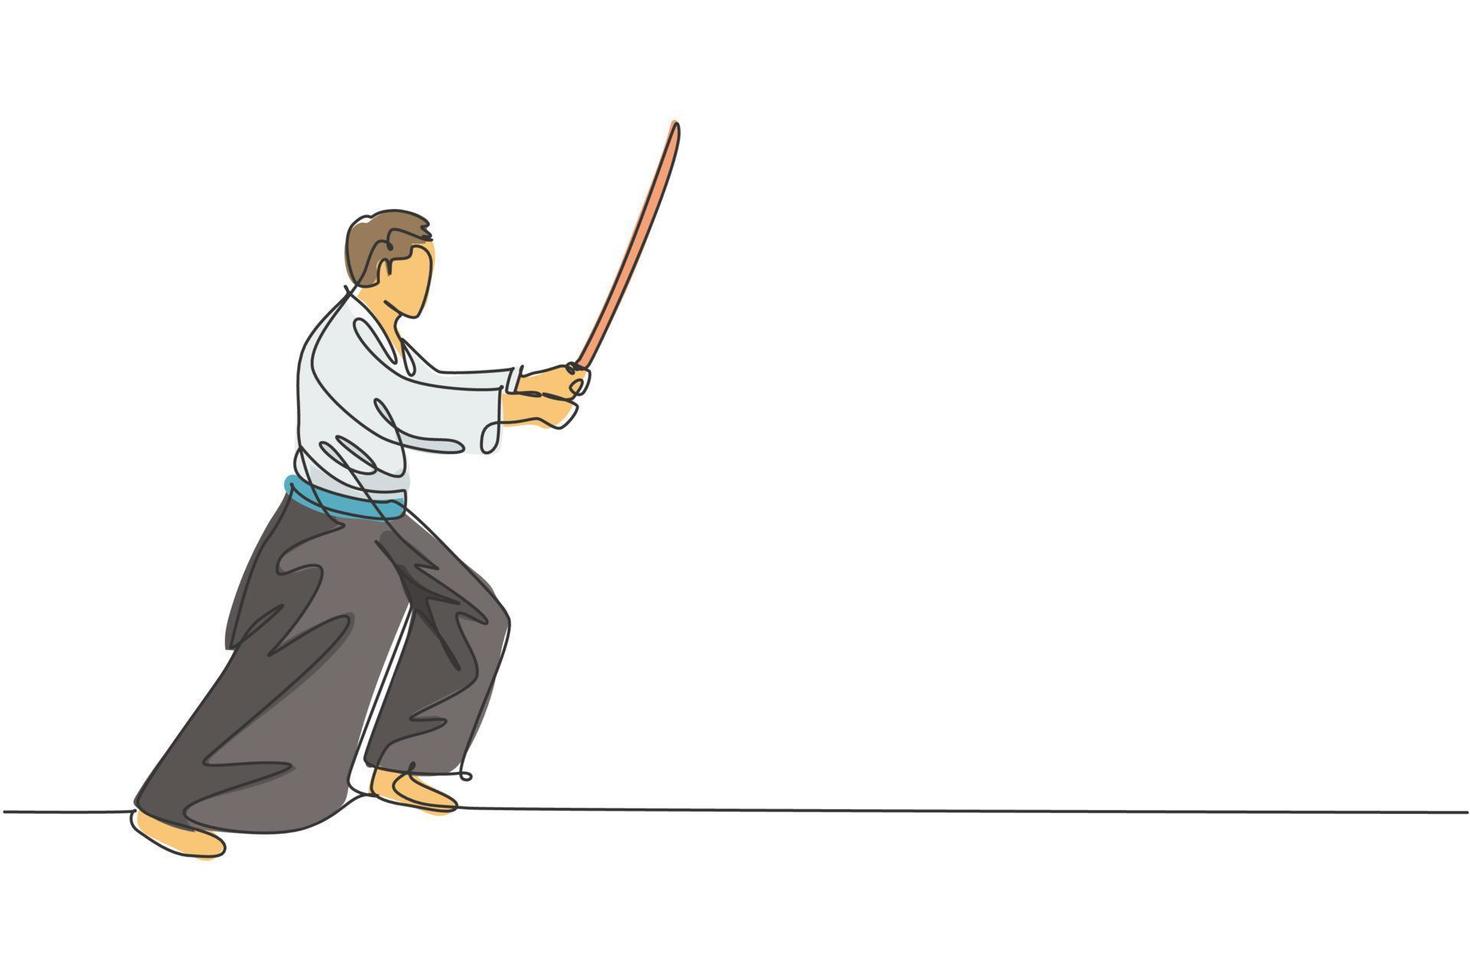 enkele doorlopende lijntekening van jonge sportieve man die kimono draagt, oefen aikido-vechttechniek met houten zwaard. Japans krijgskunstconcept. trendy één lijn tekenen ontwerp vectorillustratie vector